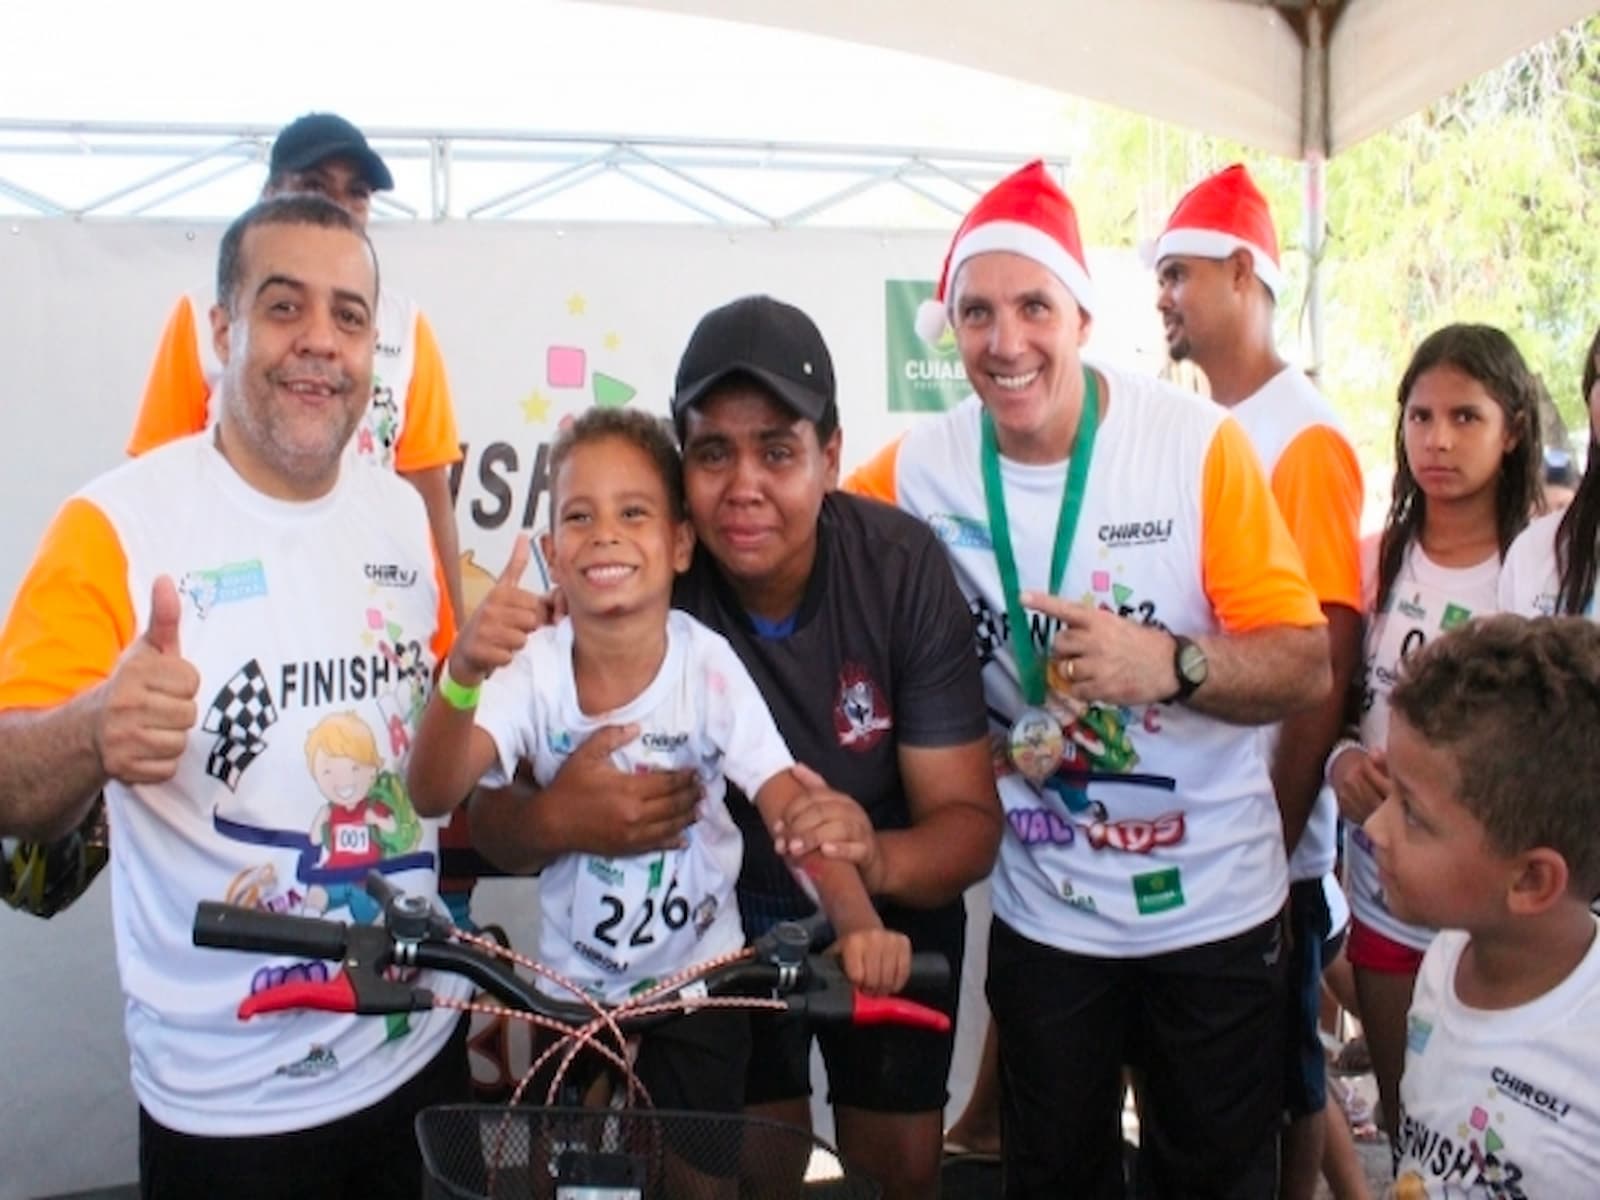 Sucesso na 6ª corrida Val Kid’s em Cuiabá: União de esporte e comunidade